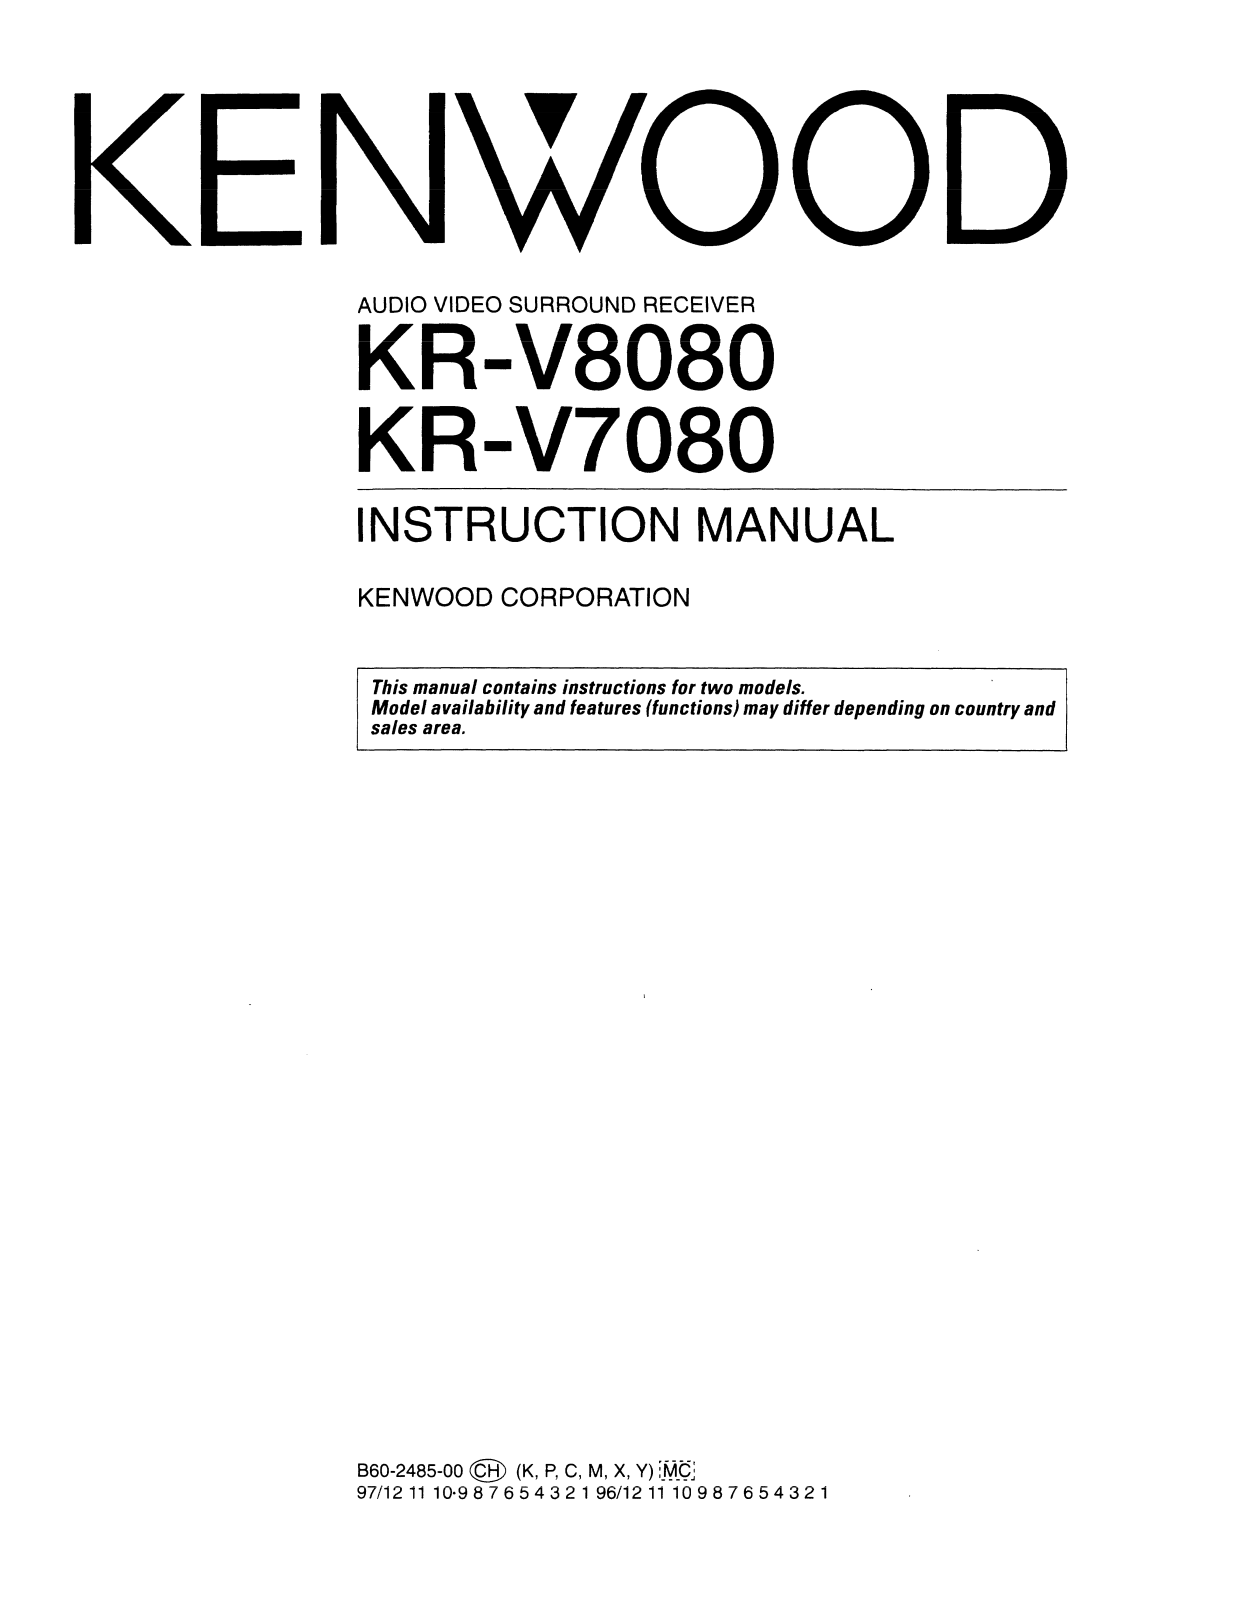 Kenwood KR-V7080, KR-V8080 Owner's Manual